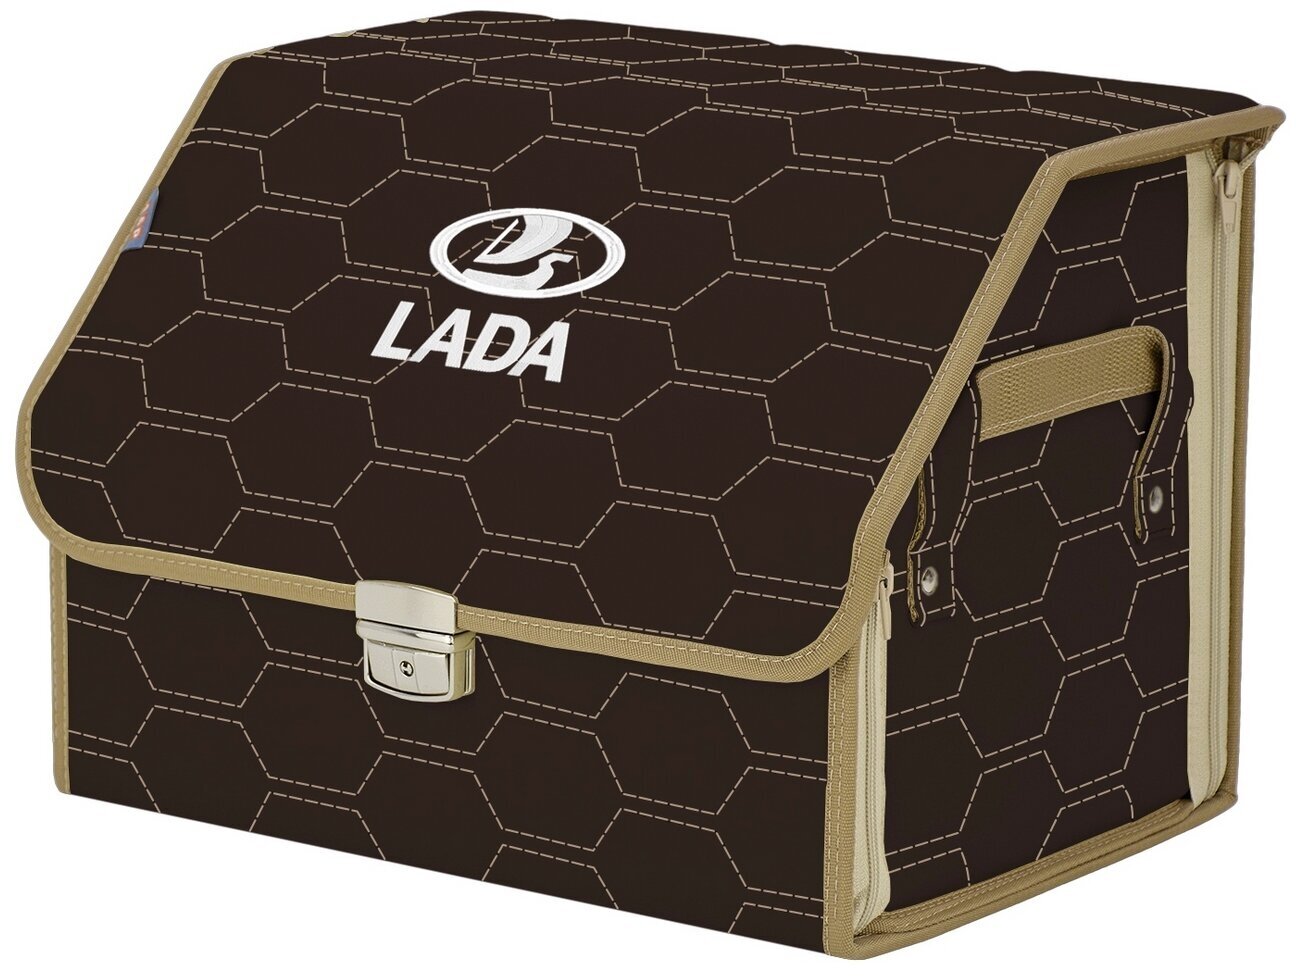 Органайзер-саквояж в багажник "Союз Премиум" (размер M). Цвет: коричневый с бежевой прострочкой Соты и вышивкой LADA (лада).